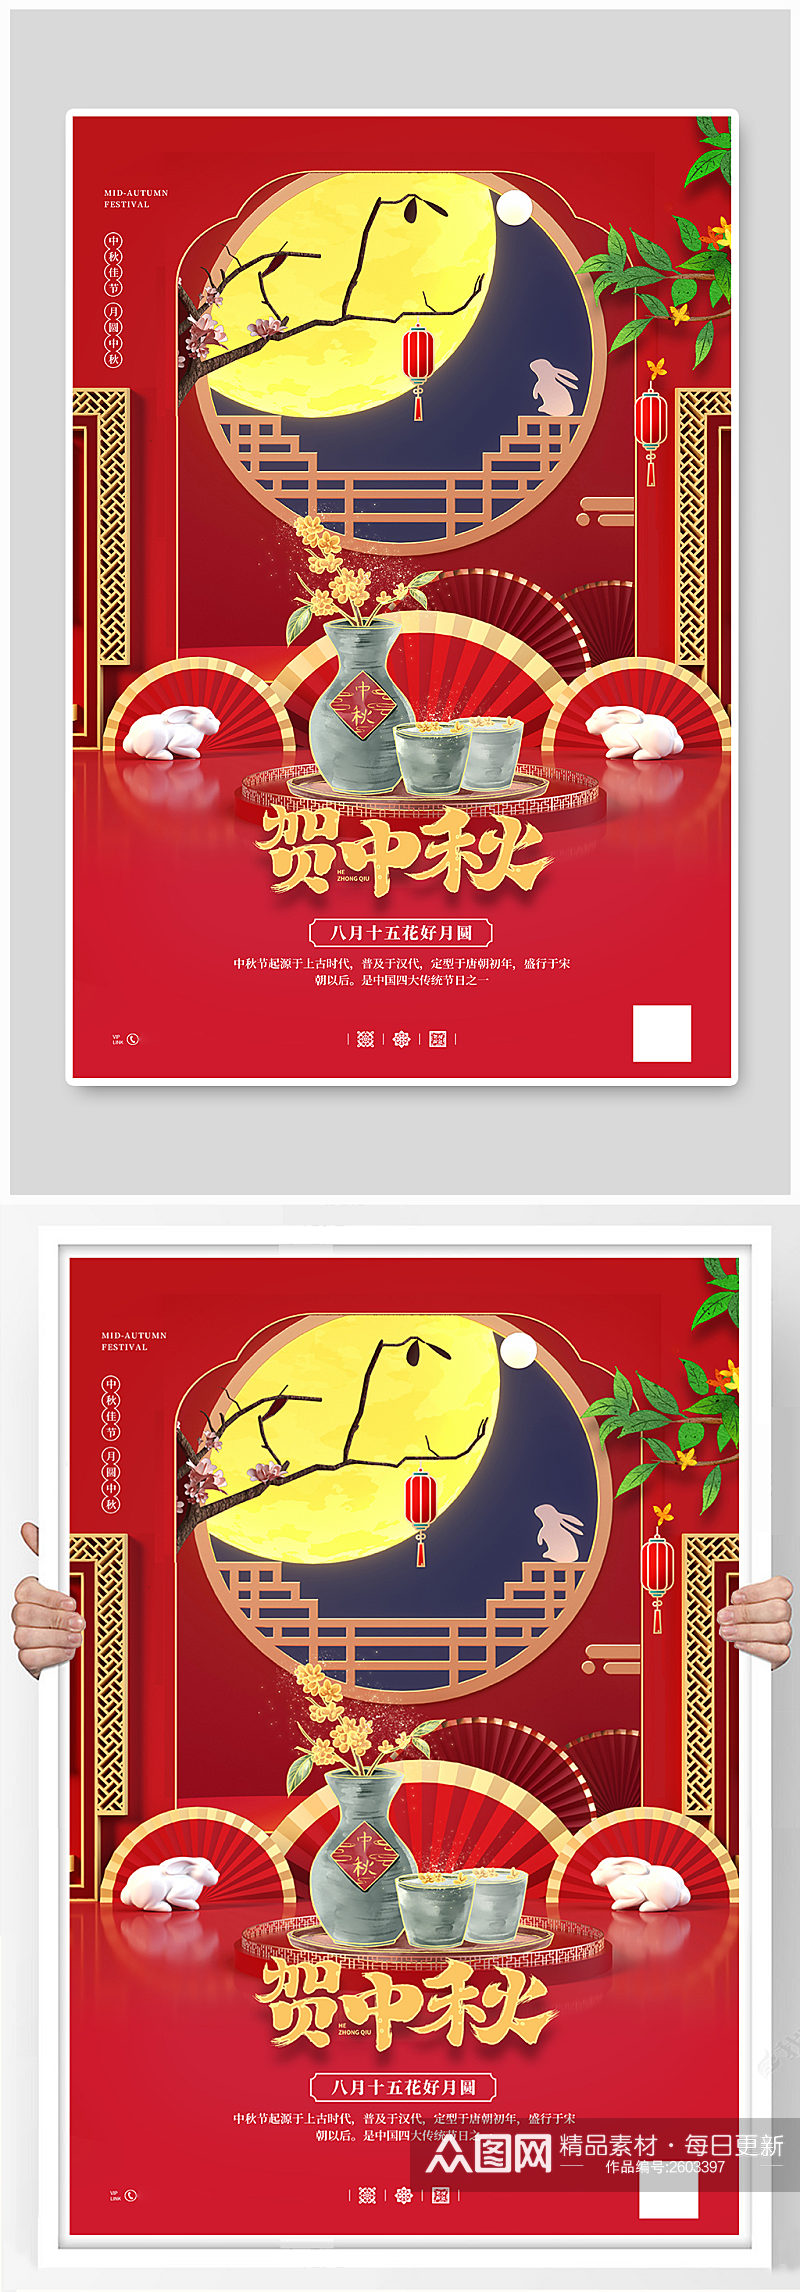 中秋味道月饼礼盒促销宣传海报素材